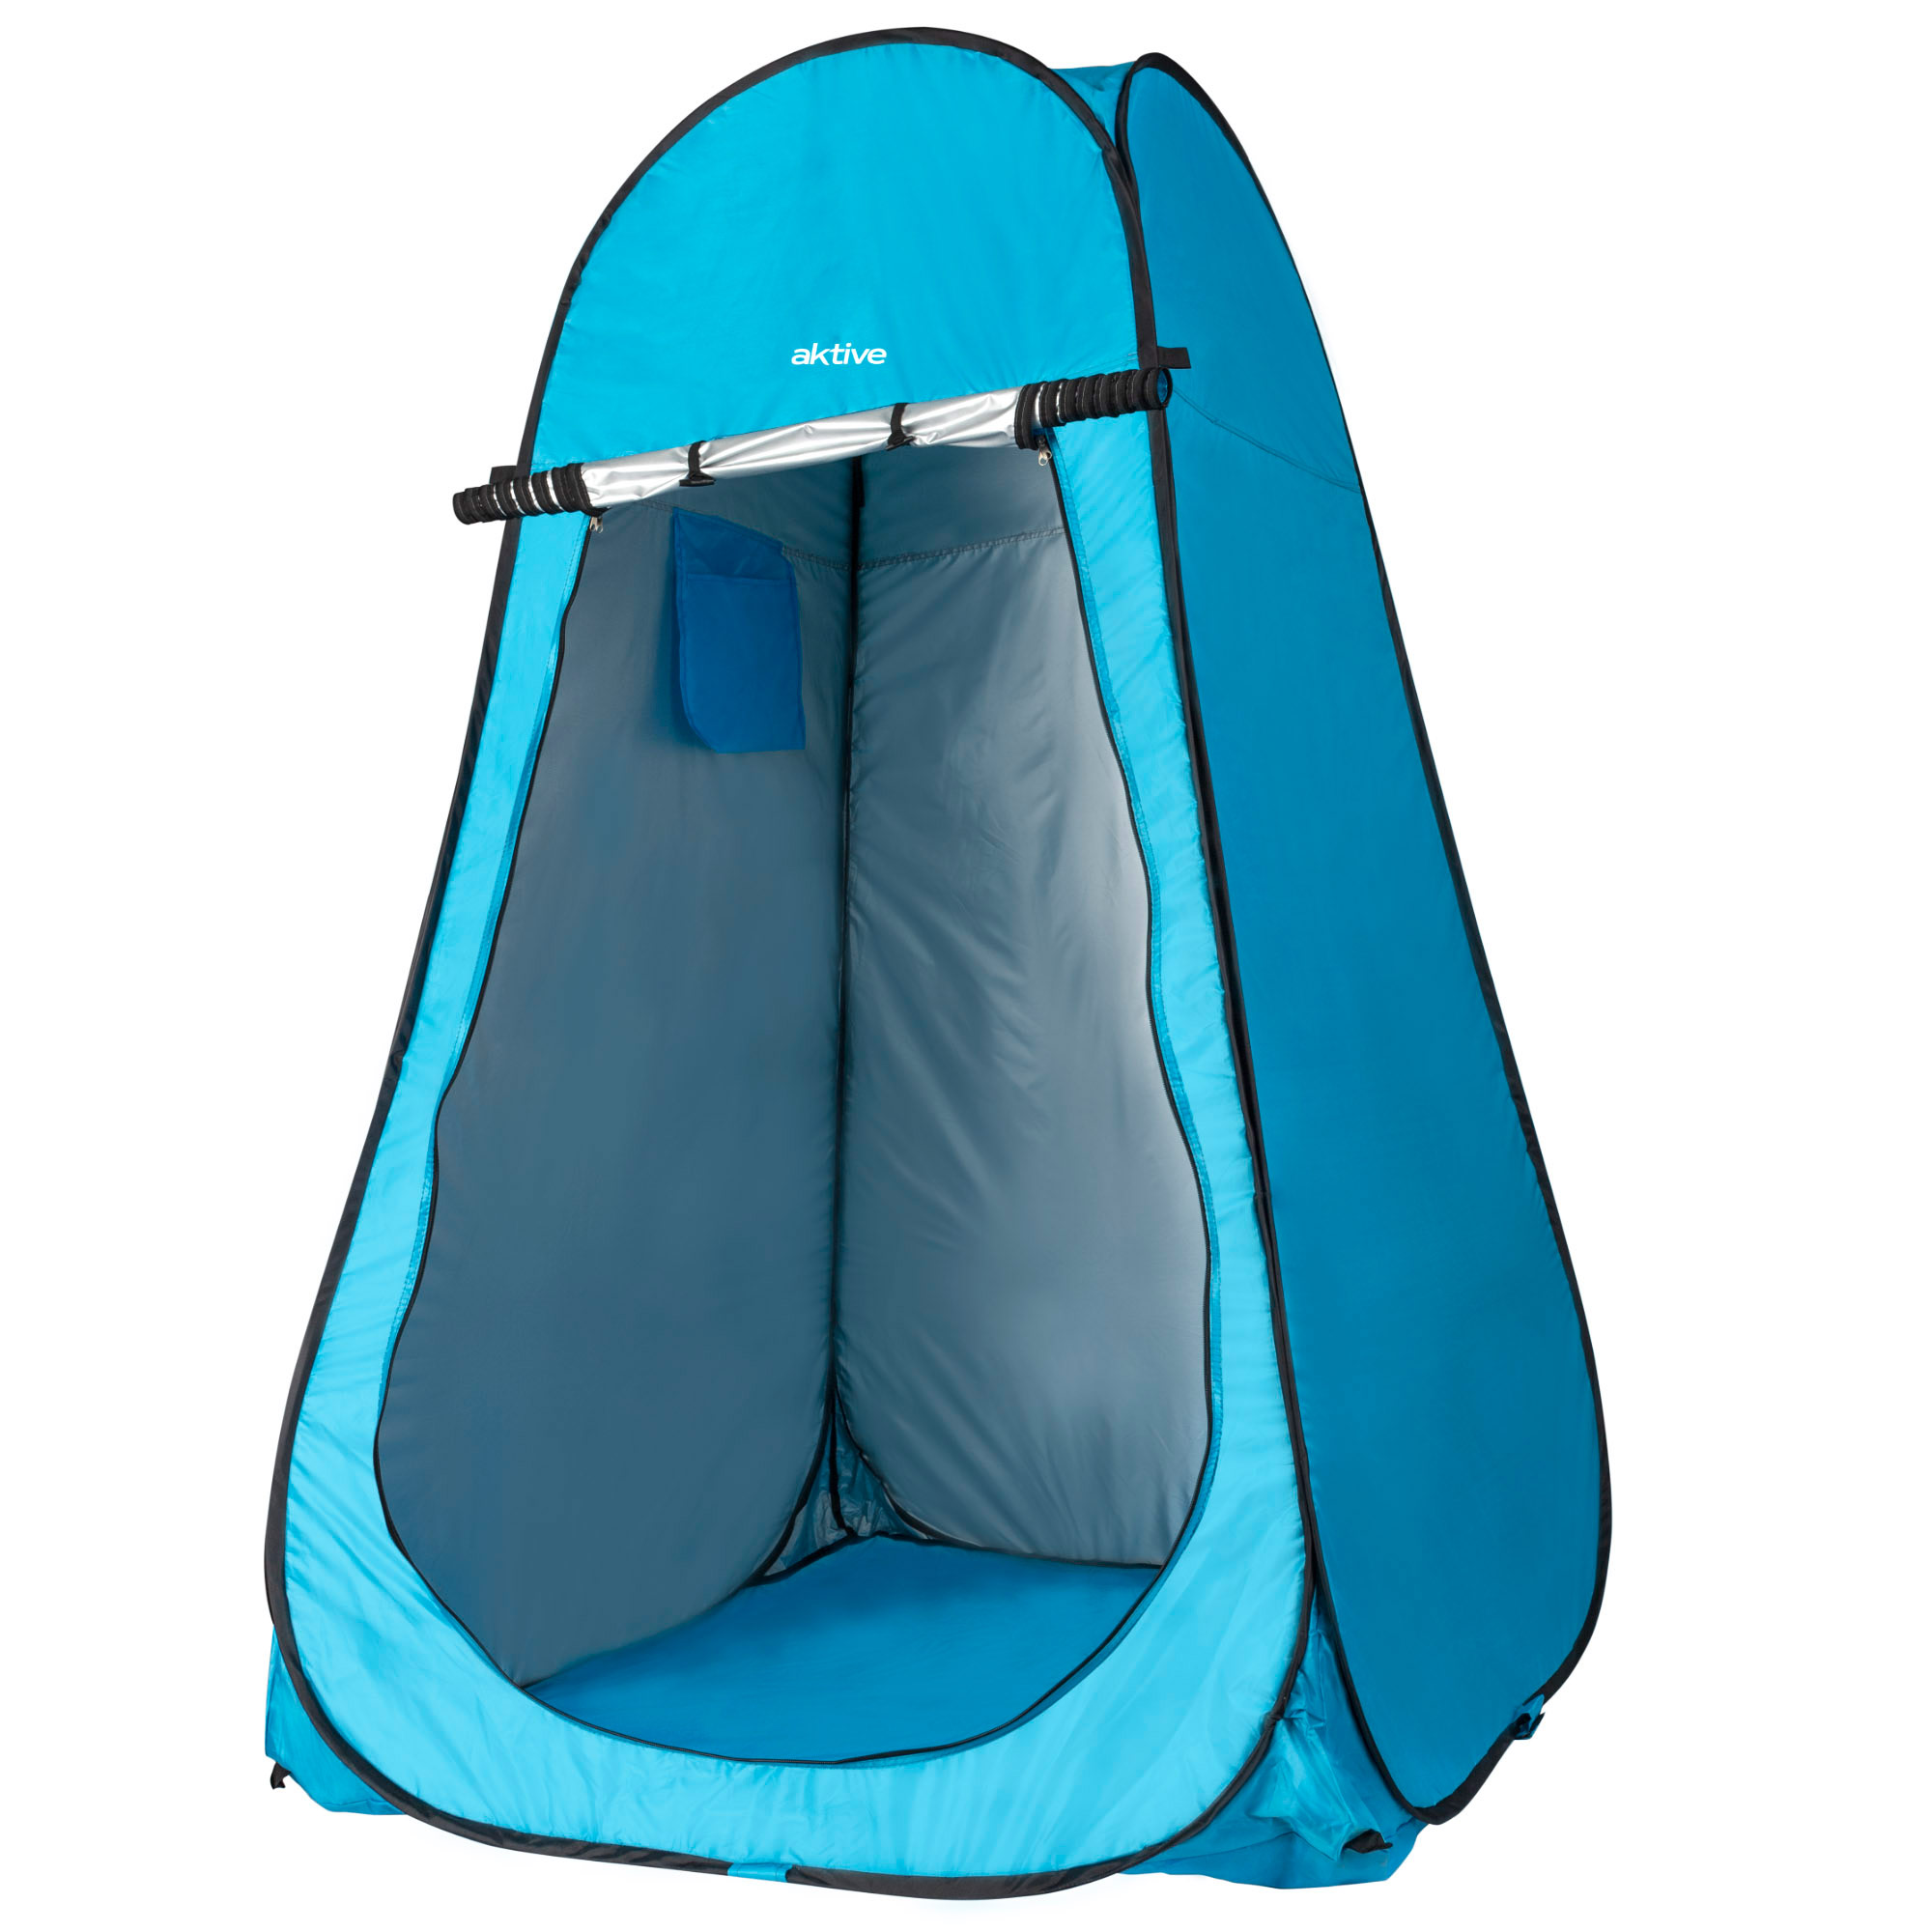 Aktive - Tienda ducha cambiador para camping con suelo Aktive 120x120x185 cm Azul